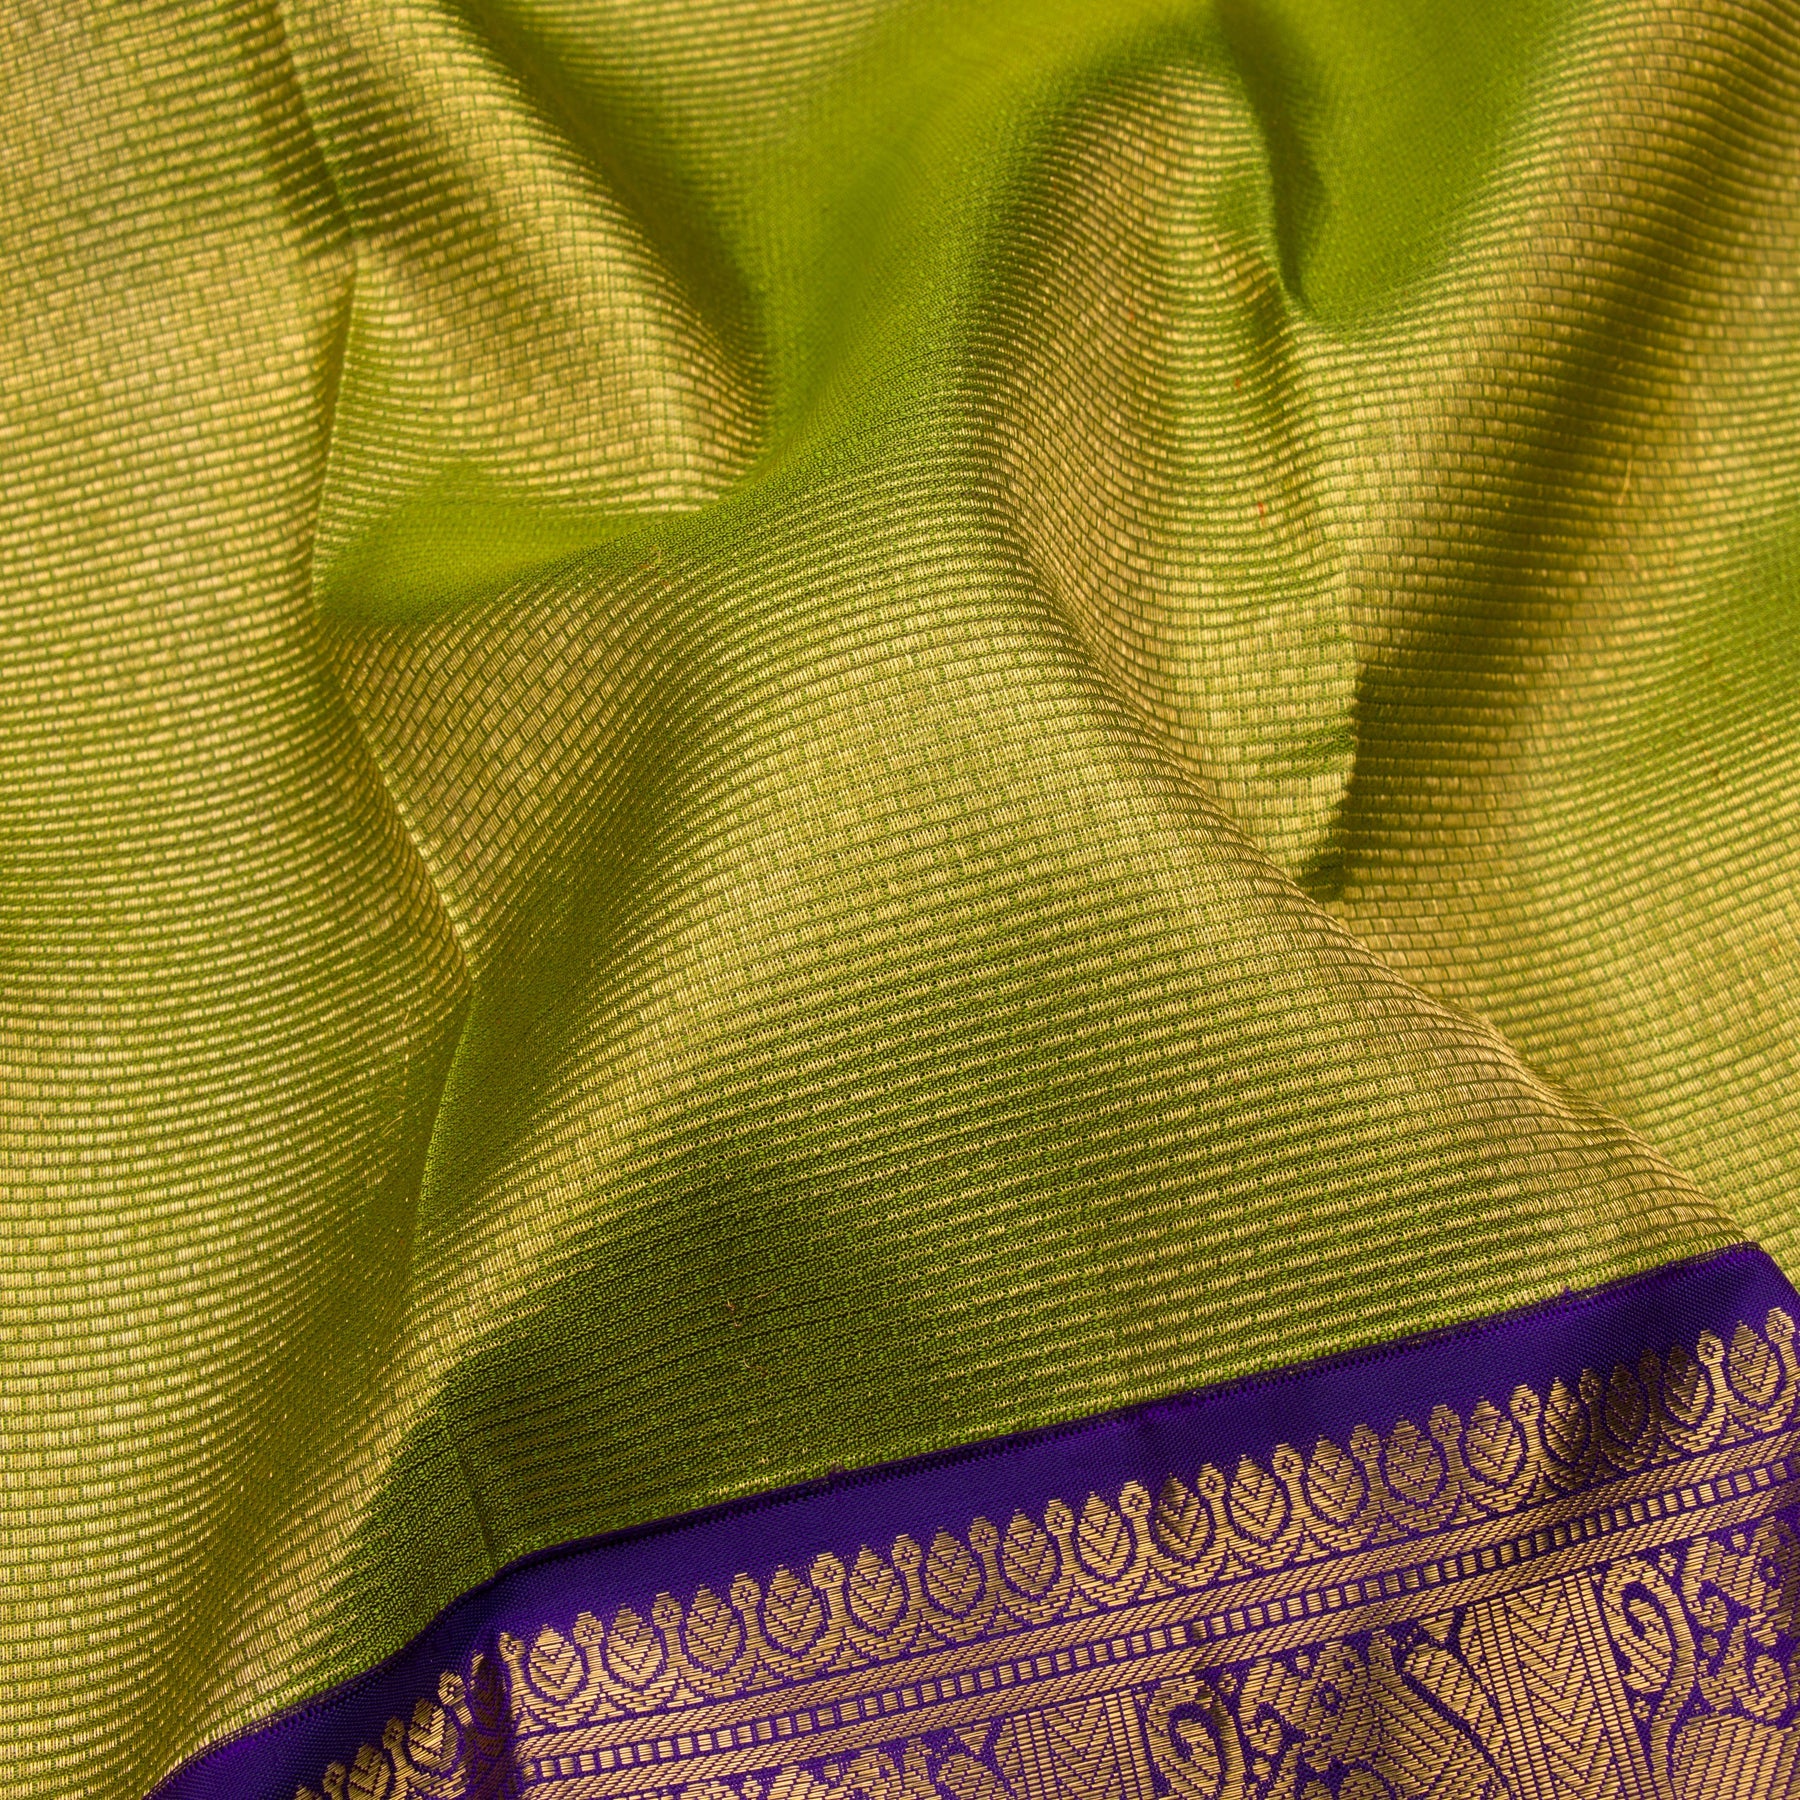 Kanakavalli Kanjivaram Silk Sari 23-110-HS001-11504 - Fabric View